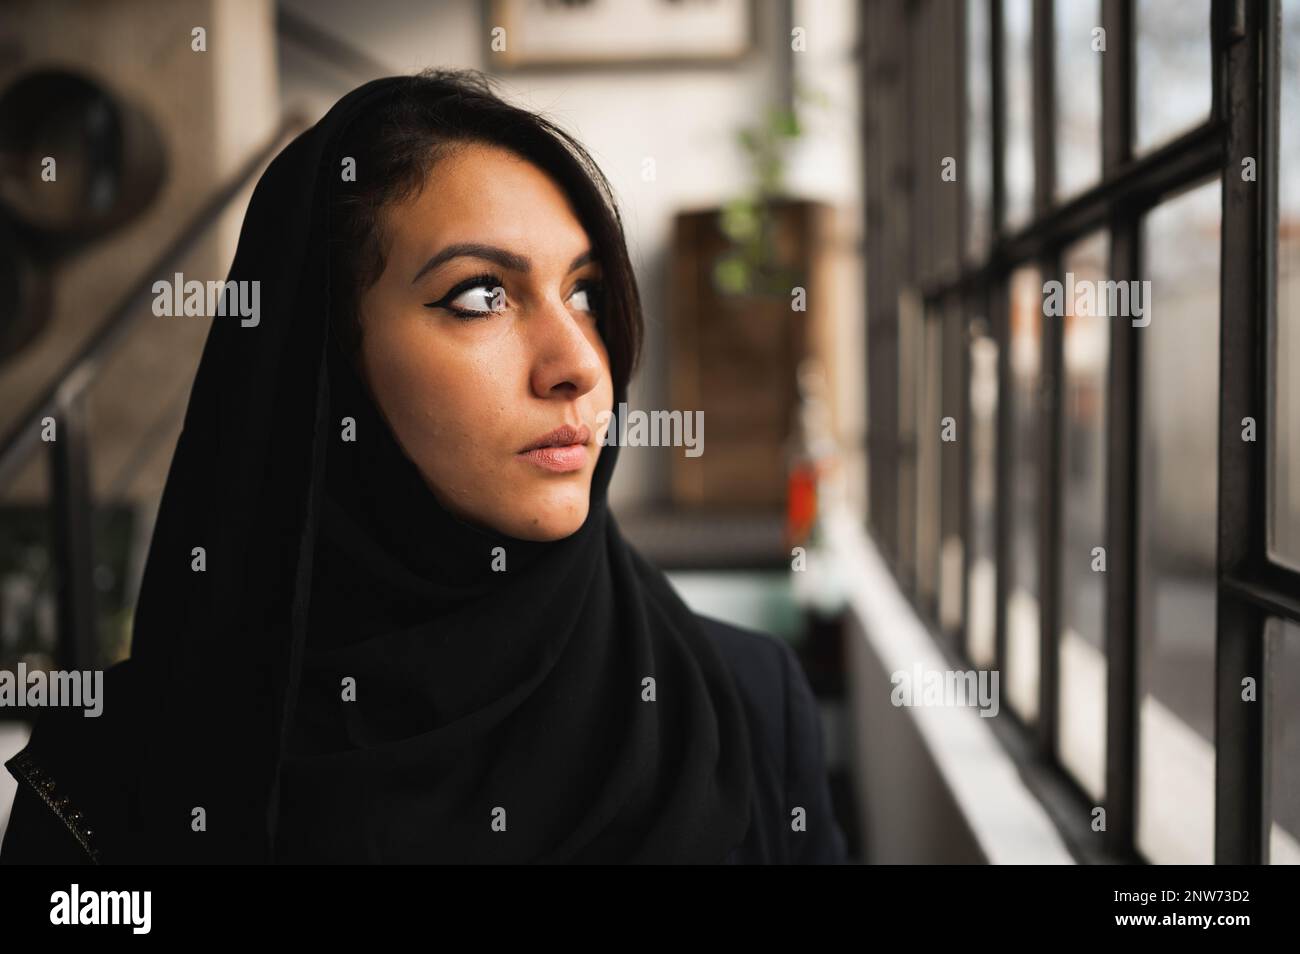 Gros plan d'une jeune femme arabe attrayante portant un voile noir. Profil femelle donnant sur la fenêtre avec le visage sérieux. Banque D'Images